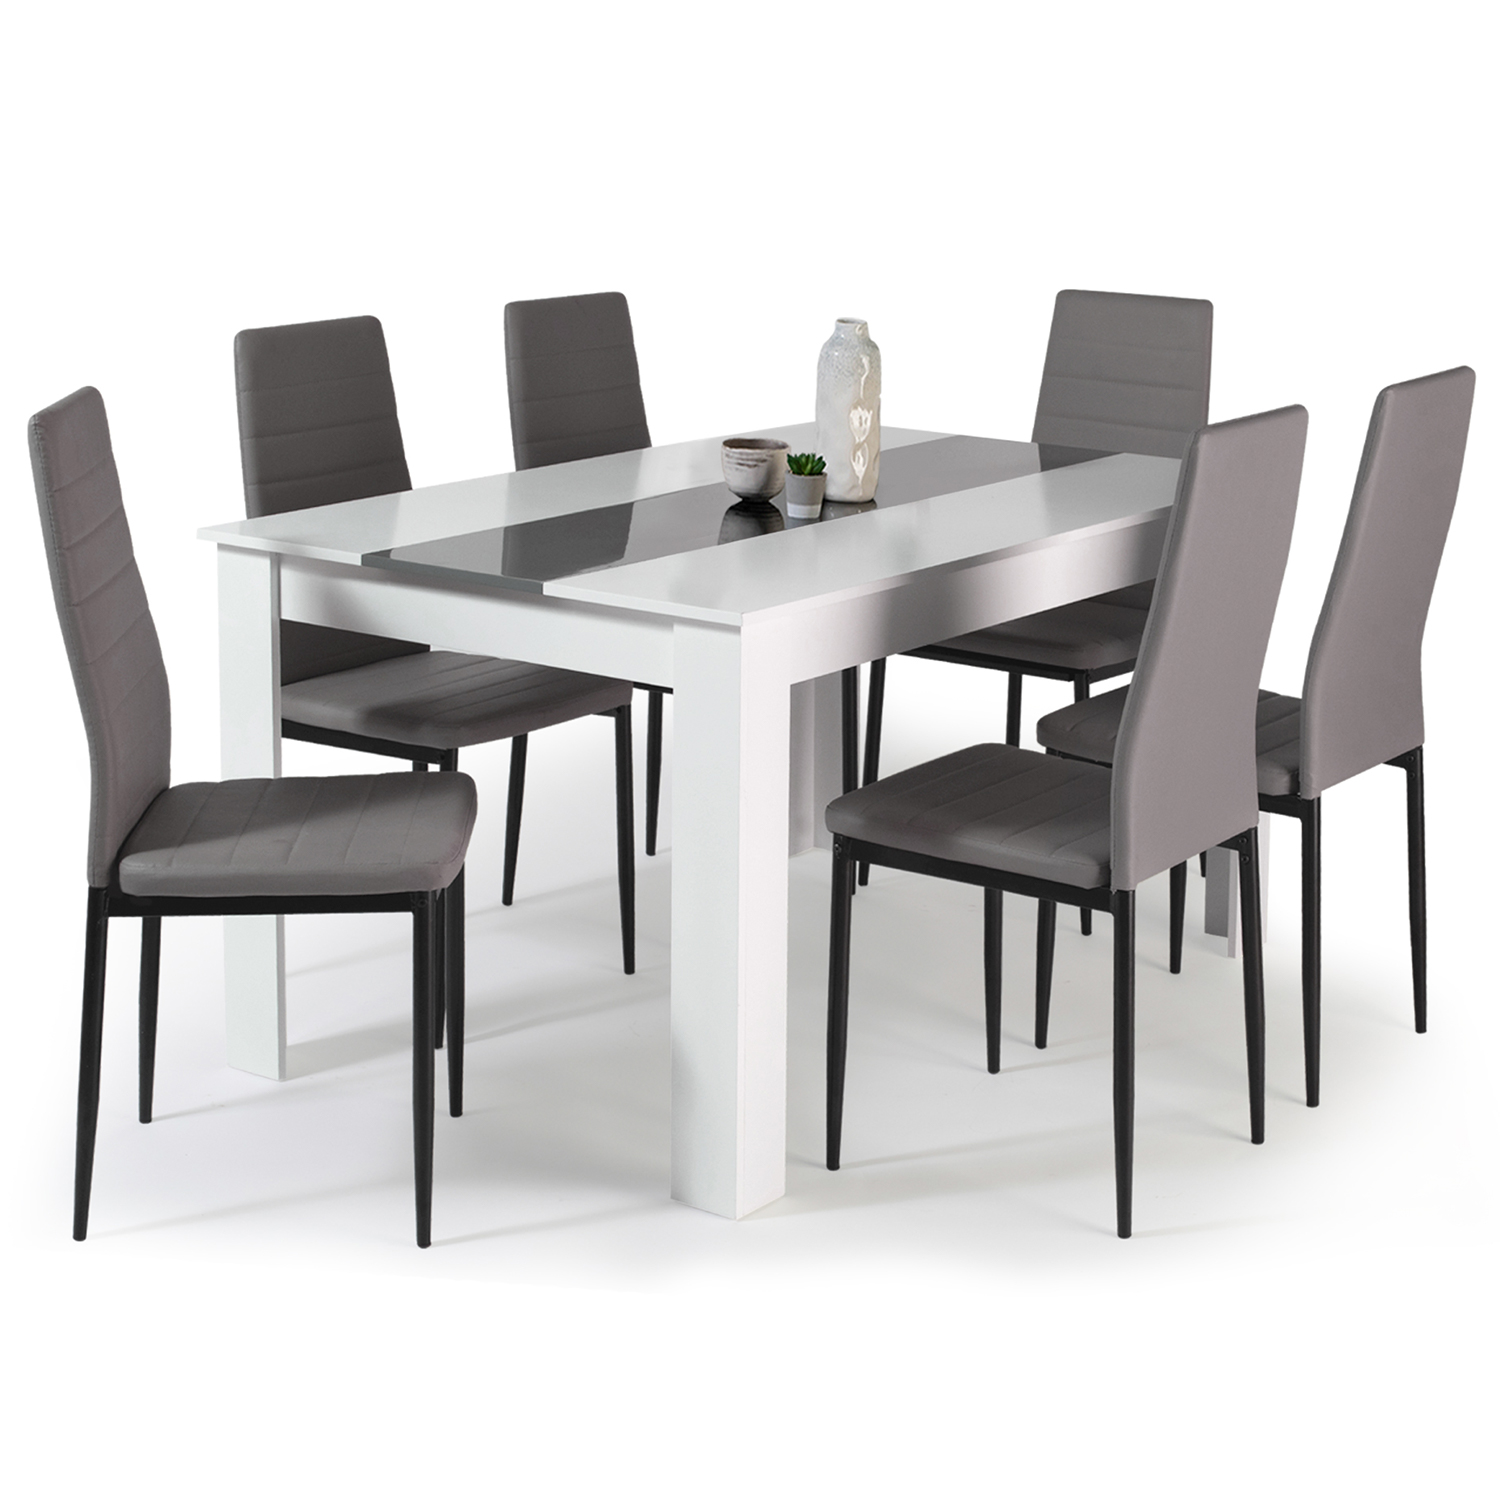 Ensembles de tables et chaises - Tables pour salle à manger